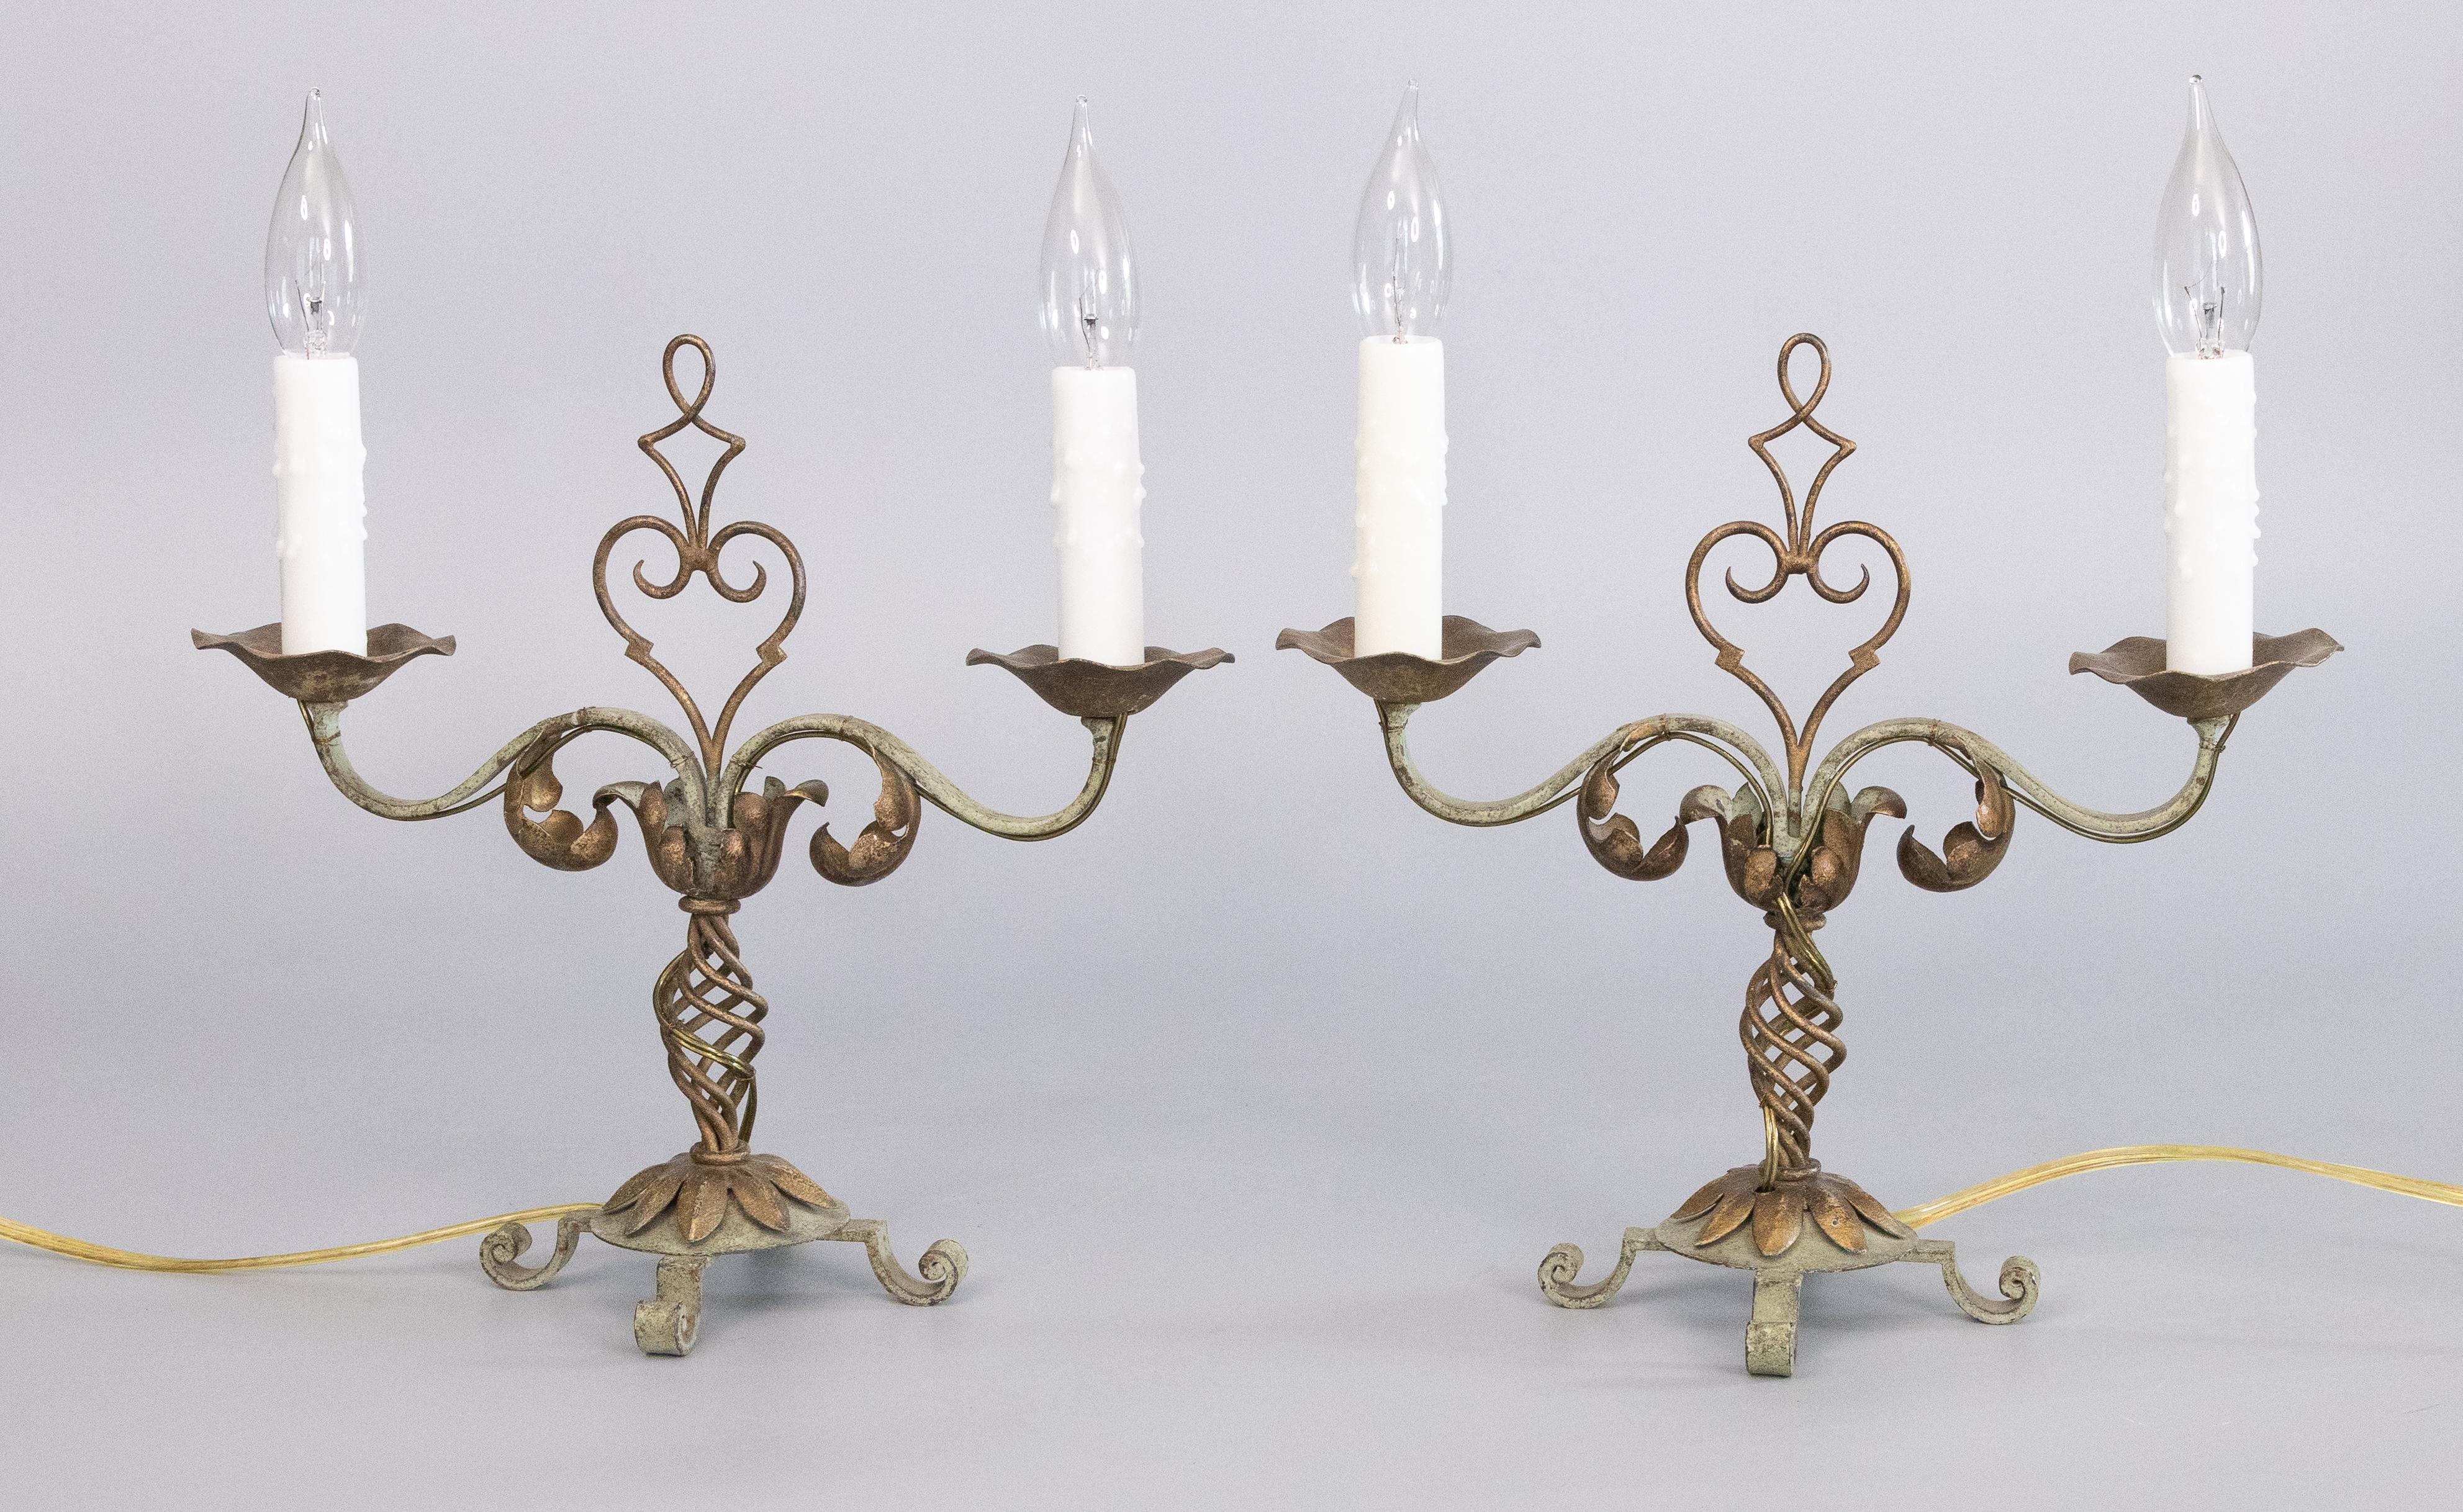 Une magnifique paire de lampes de table candélabres à deux lumières, en fer et en métal doré, datant des années 1930. Ces magnifiques lampes sont peintes à la main avec de belles couleurs or et vert-de-gris clair et agrémentées de manchons de